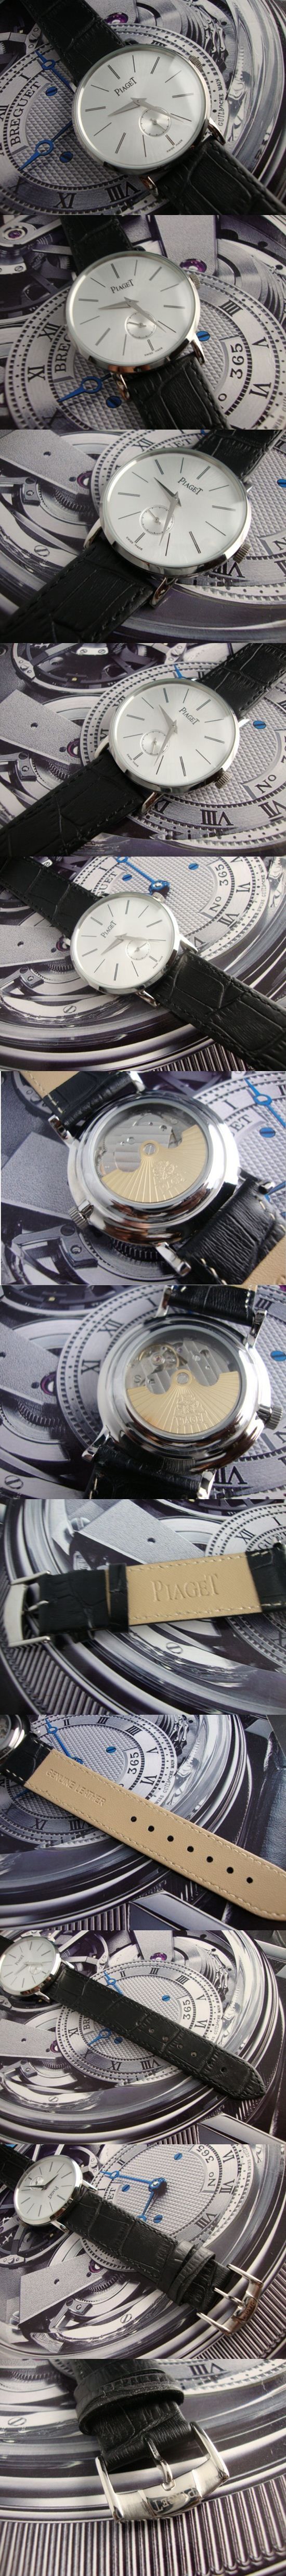 おしゃれなブランド時計がPIAGET-ピアジェ腕時計 ピアジェ 男/女腕時計 PIAGET-N-002Aを提供します.